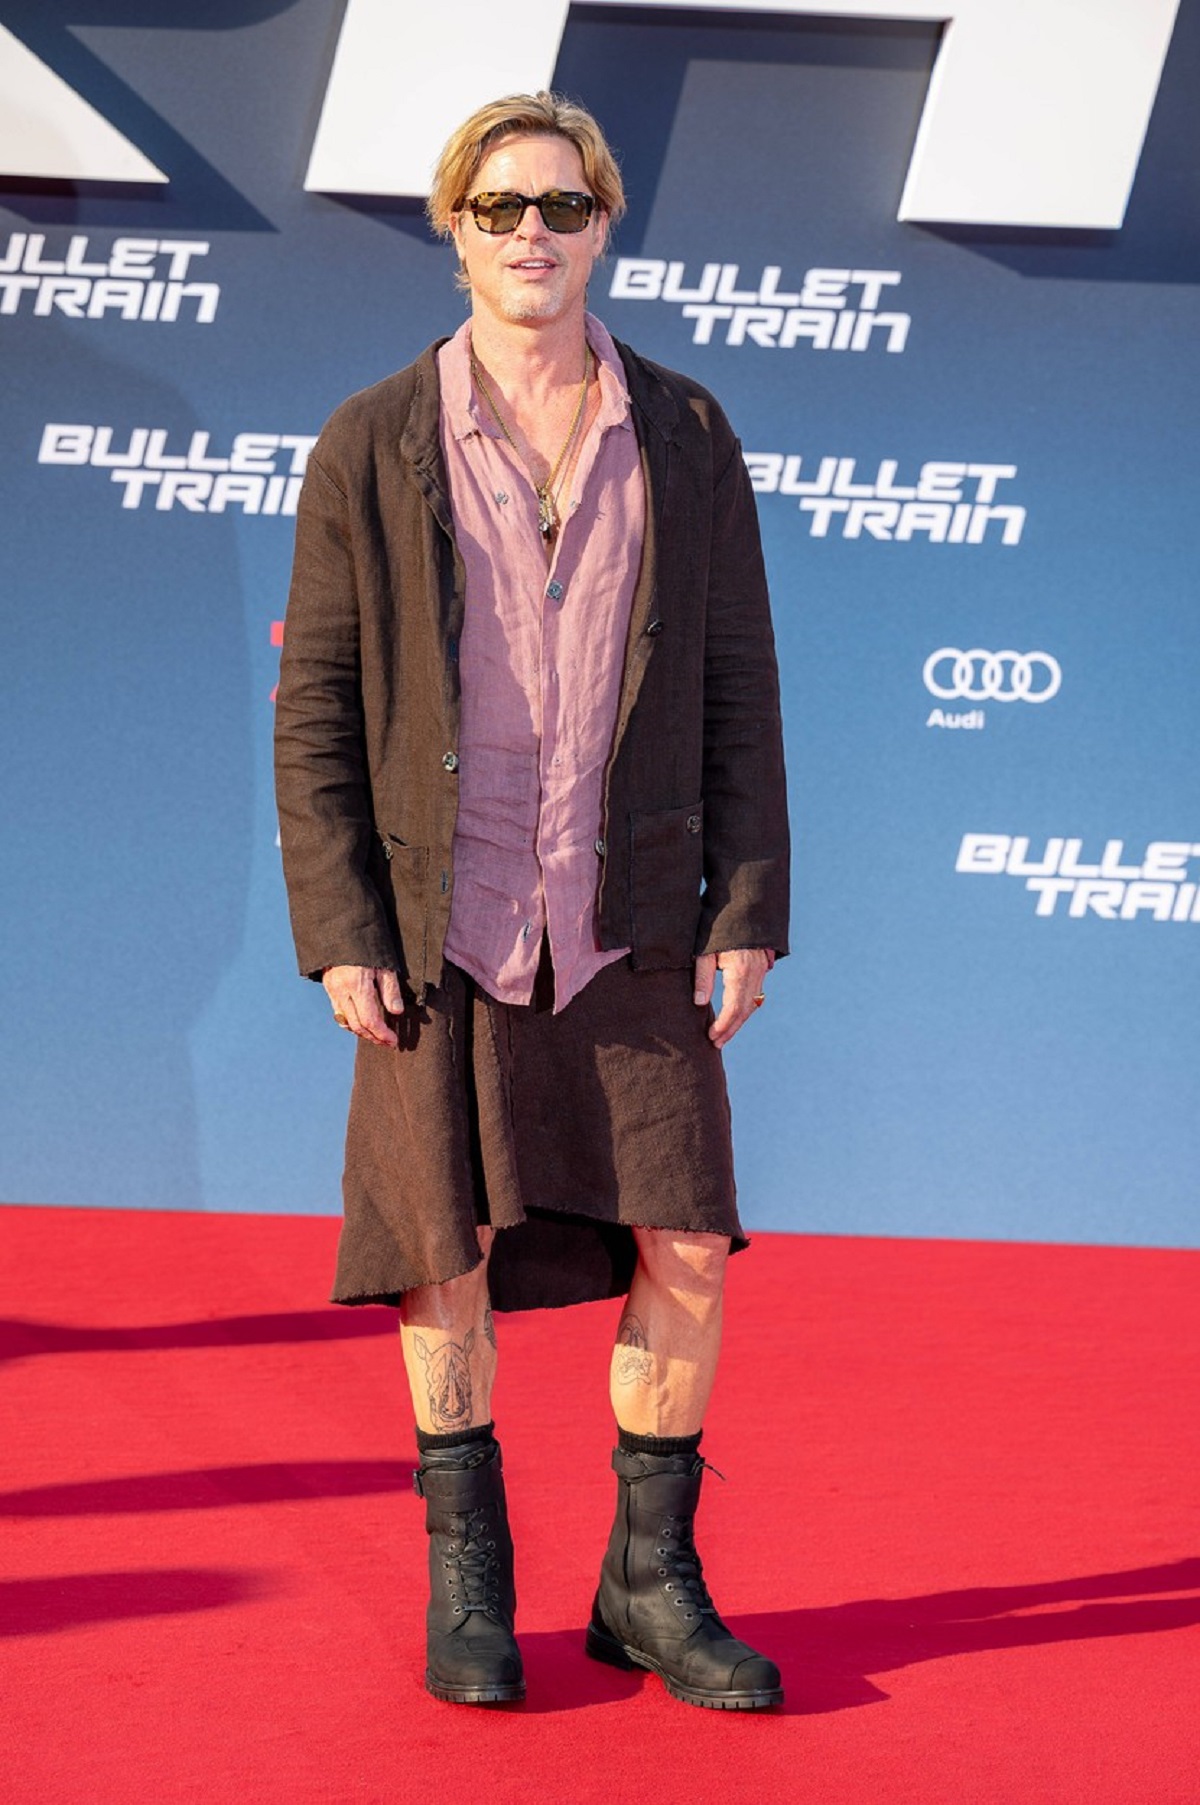 Brad Pitt îmbrăcat în fustă în timp ce pozează pe covorul roșu la premiera filmului Bullet Train din Berlin